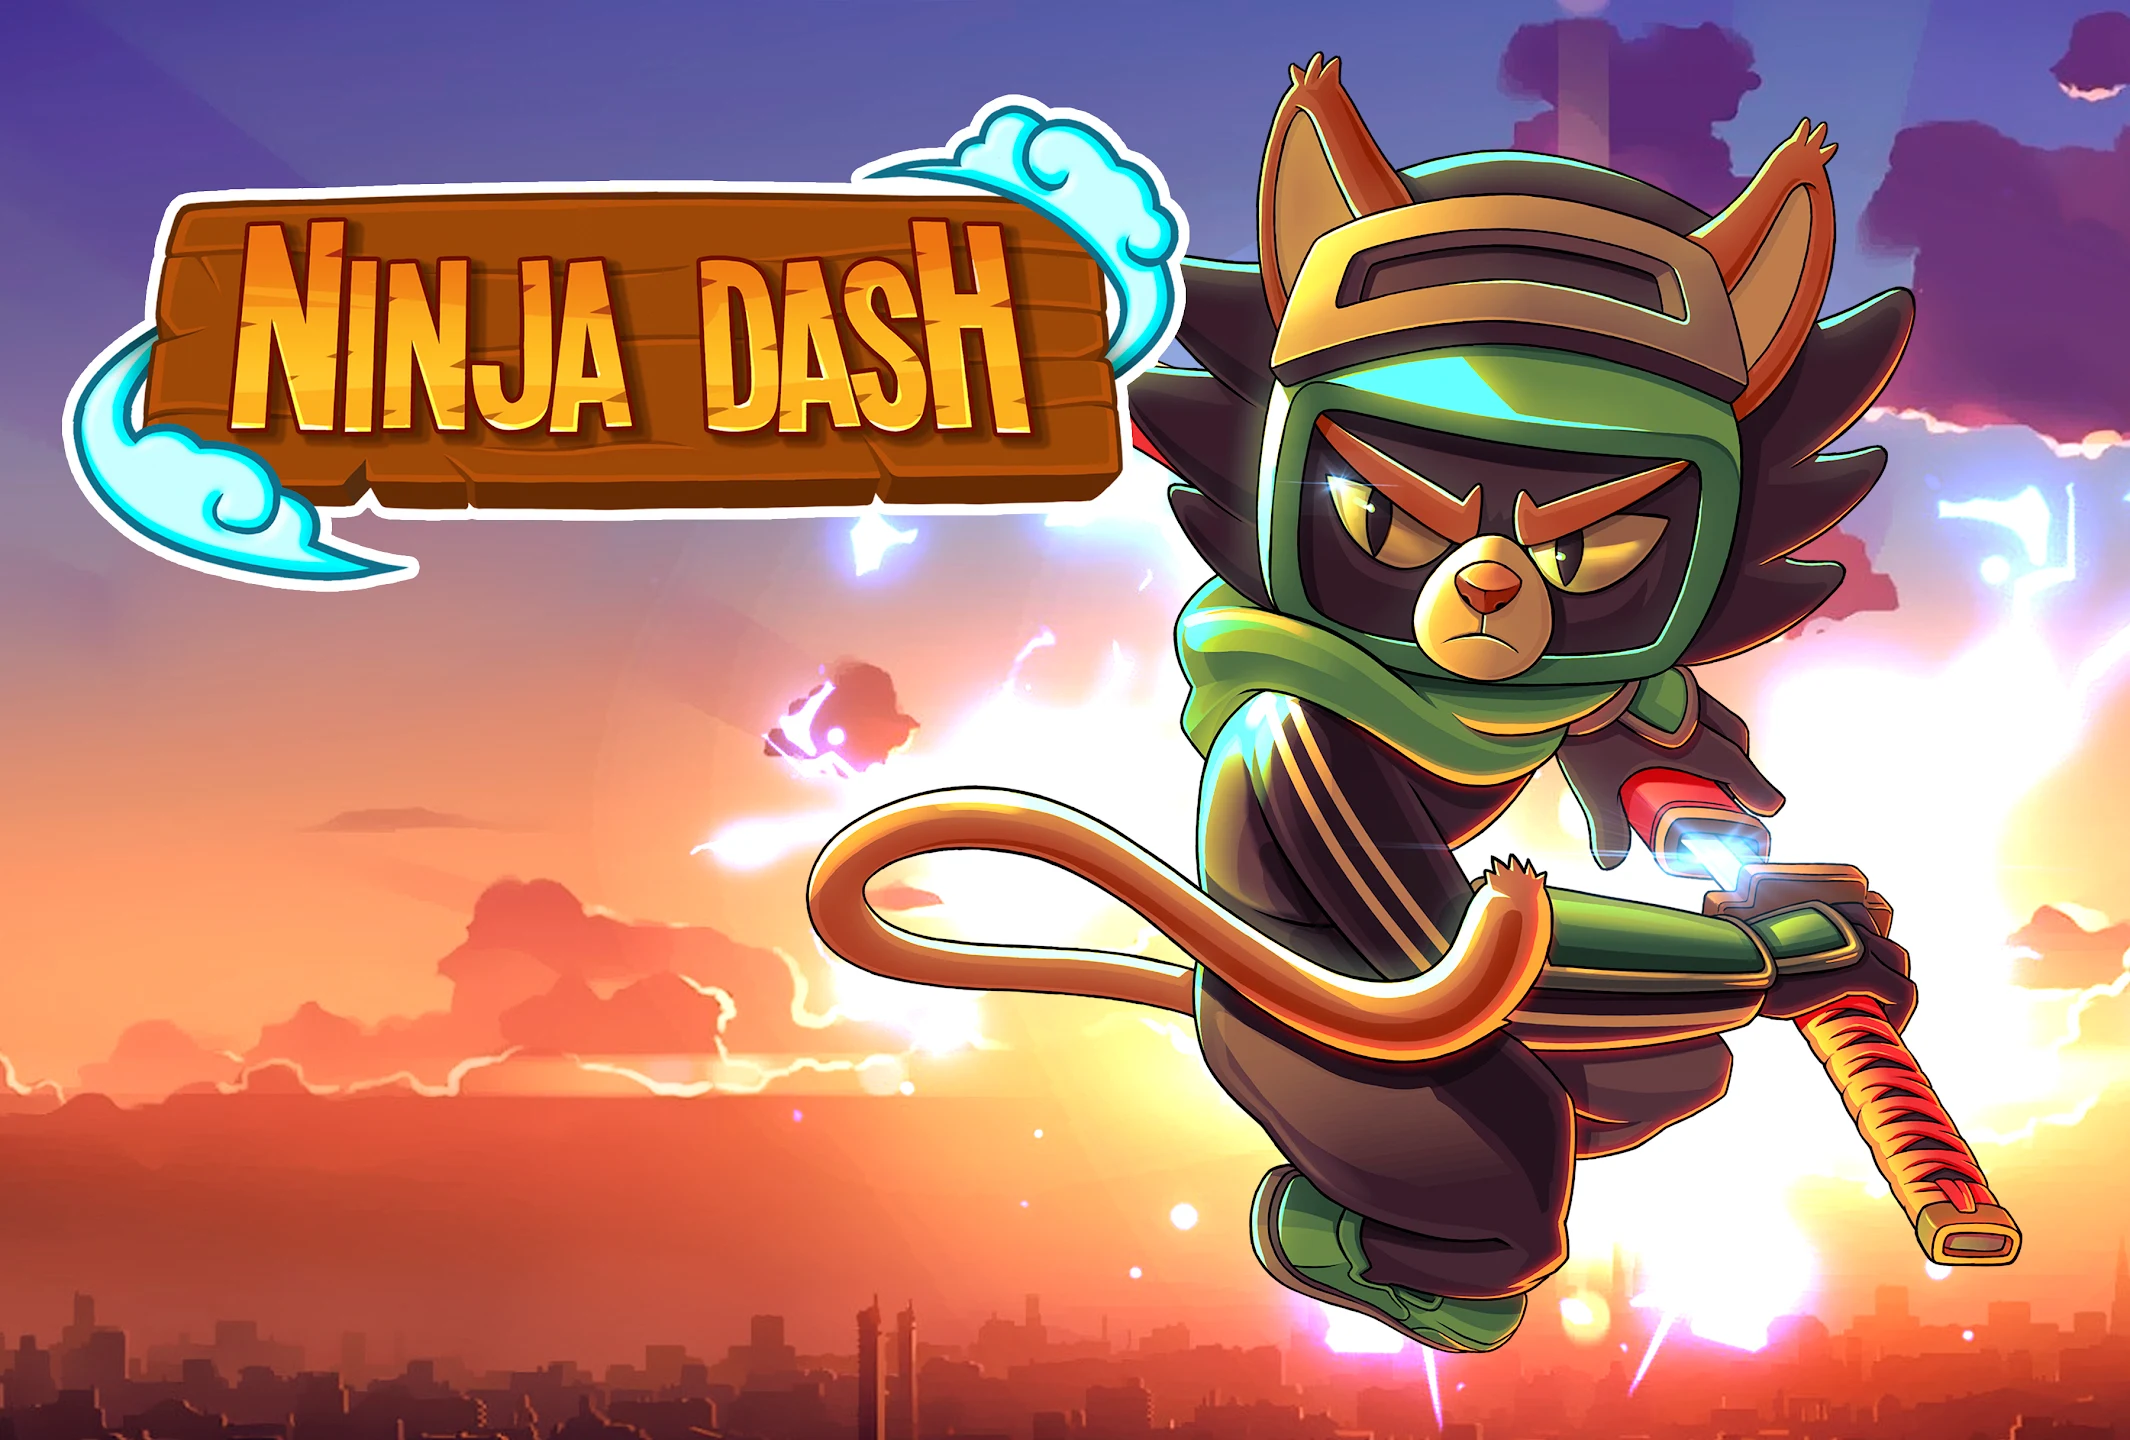 Ninja Dash Run takes you on a mission to revenge Sensei